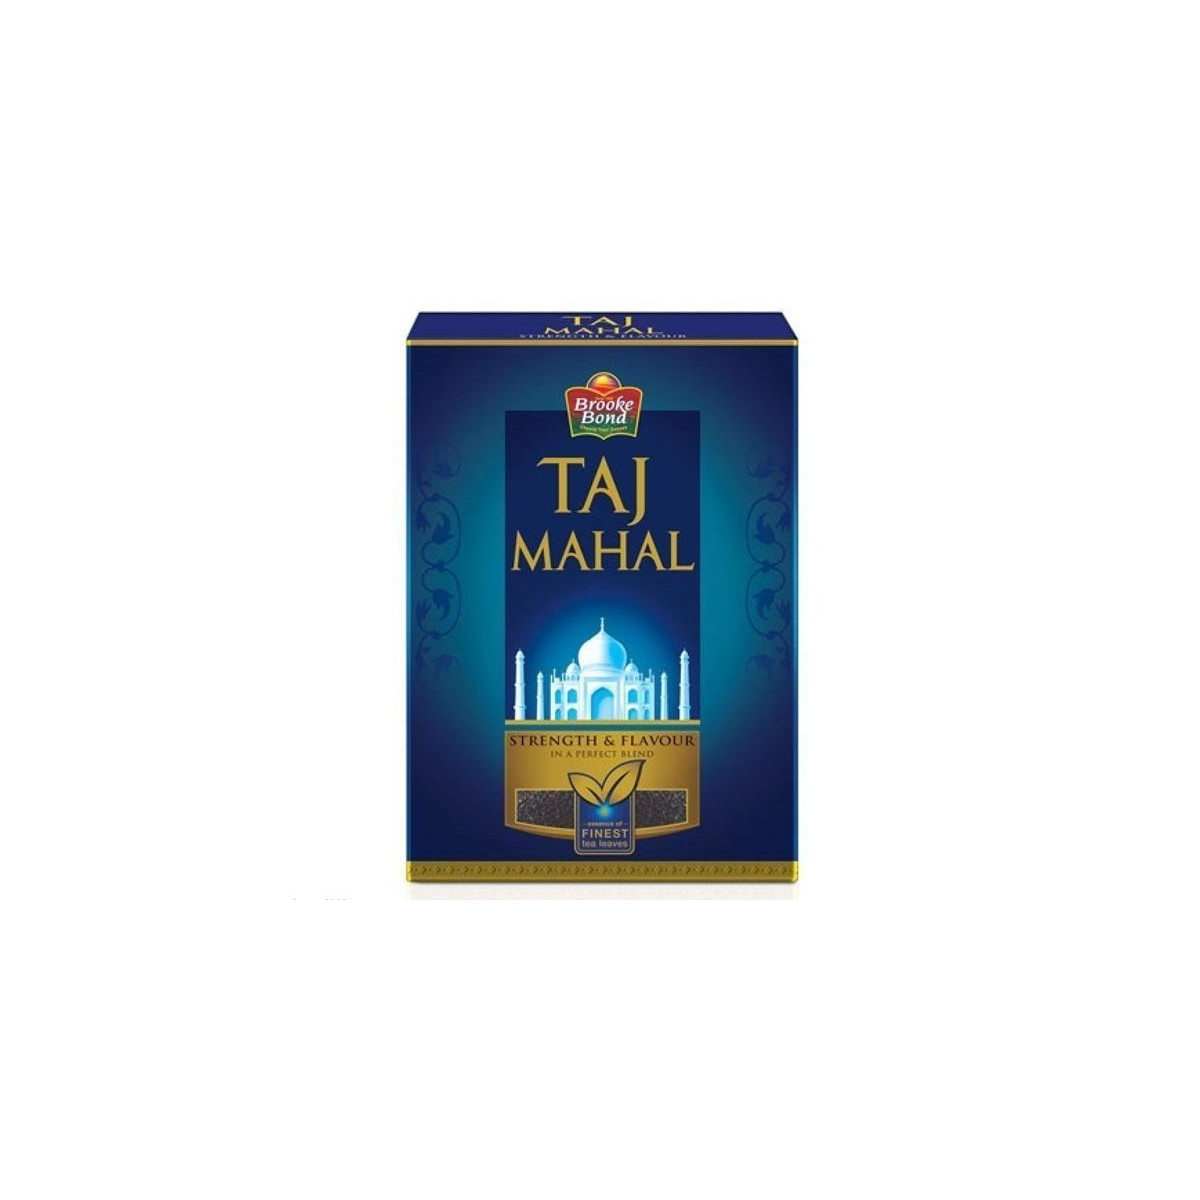 Ceai negru Taj Mahal 450g